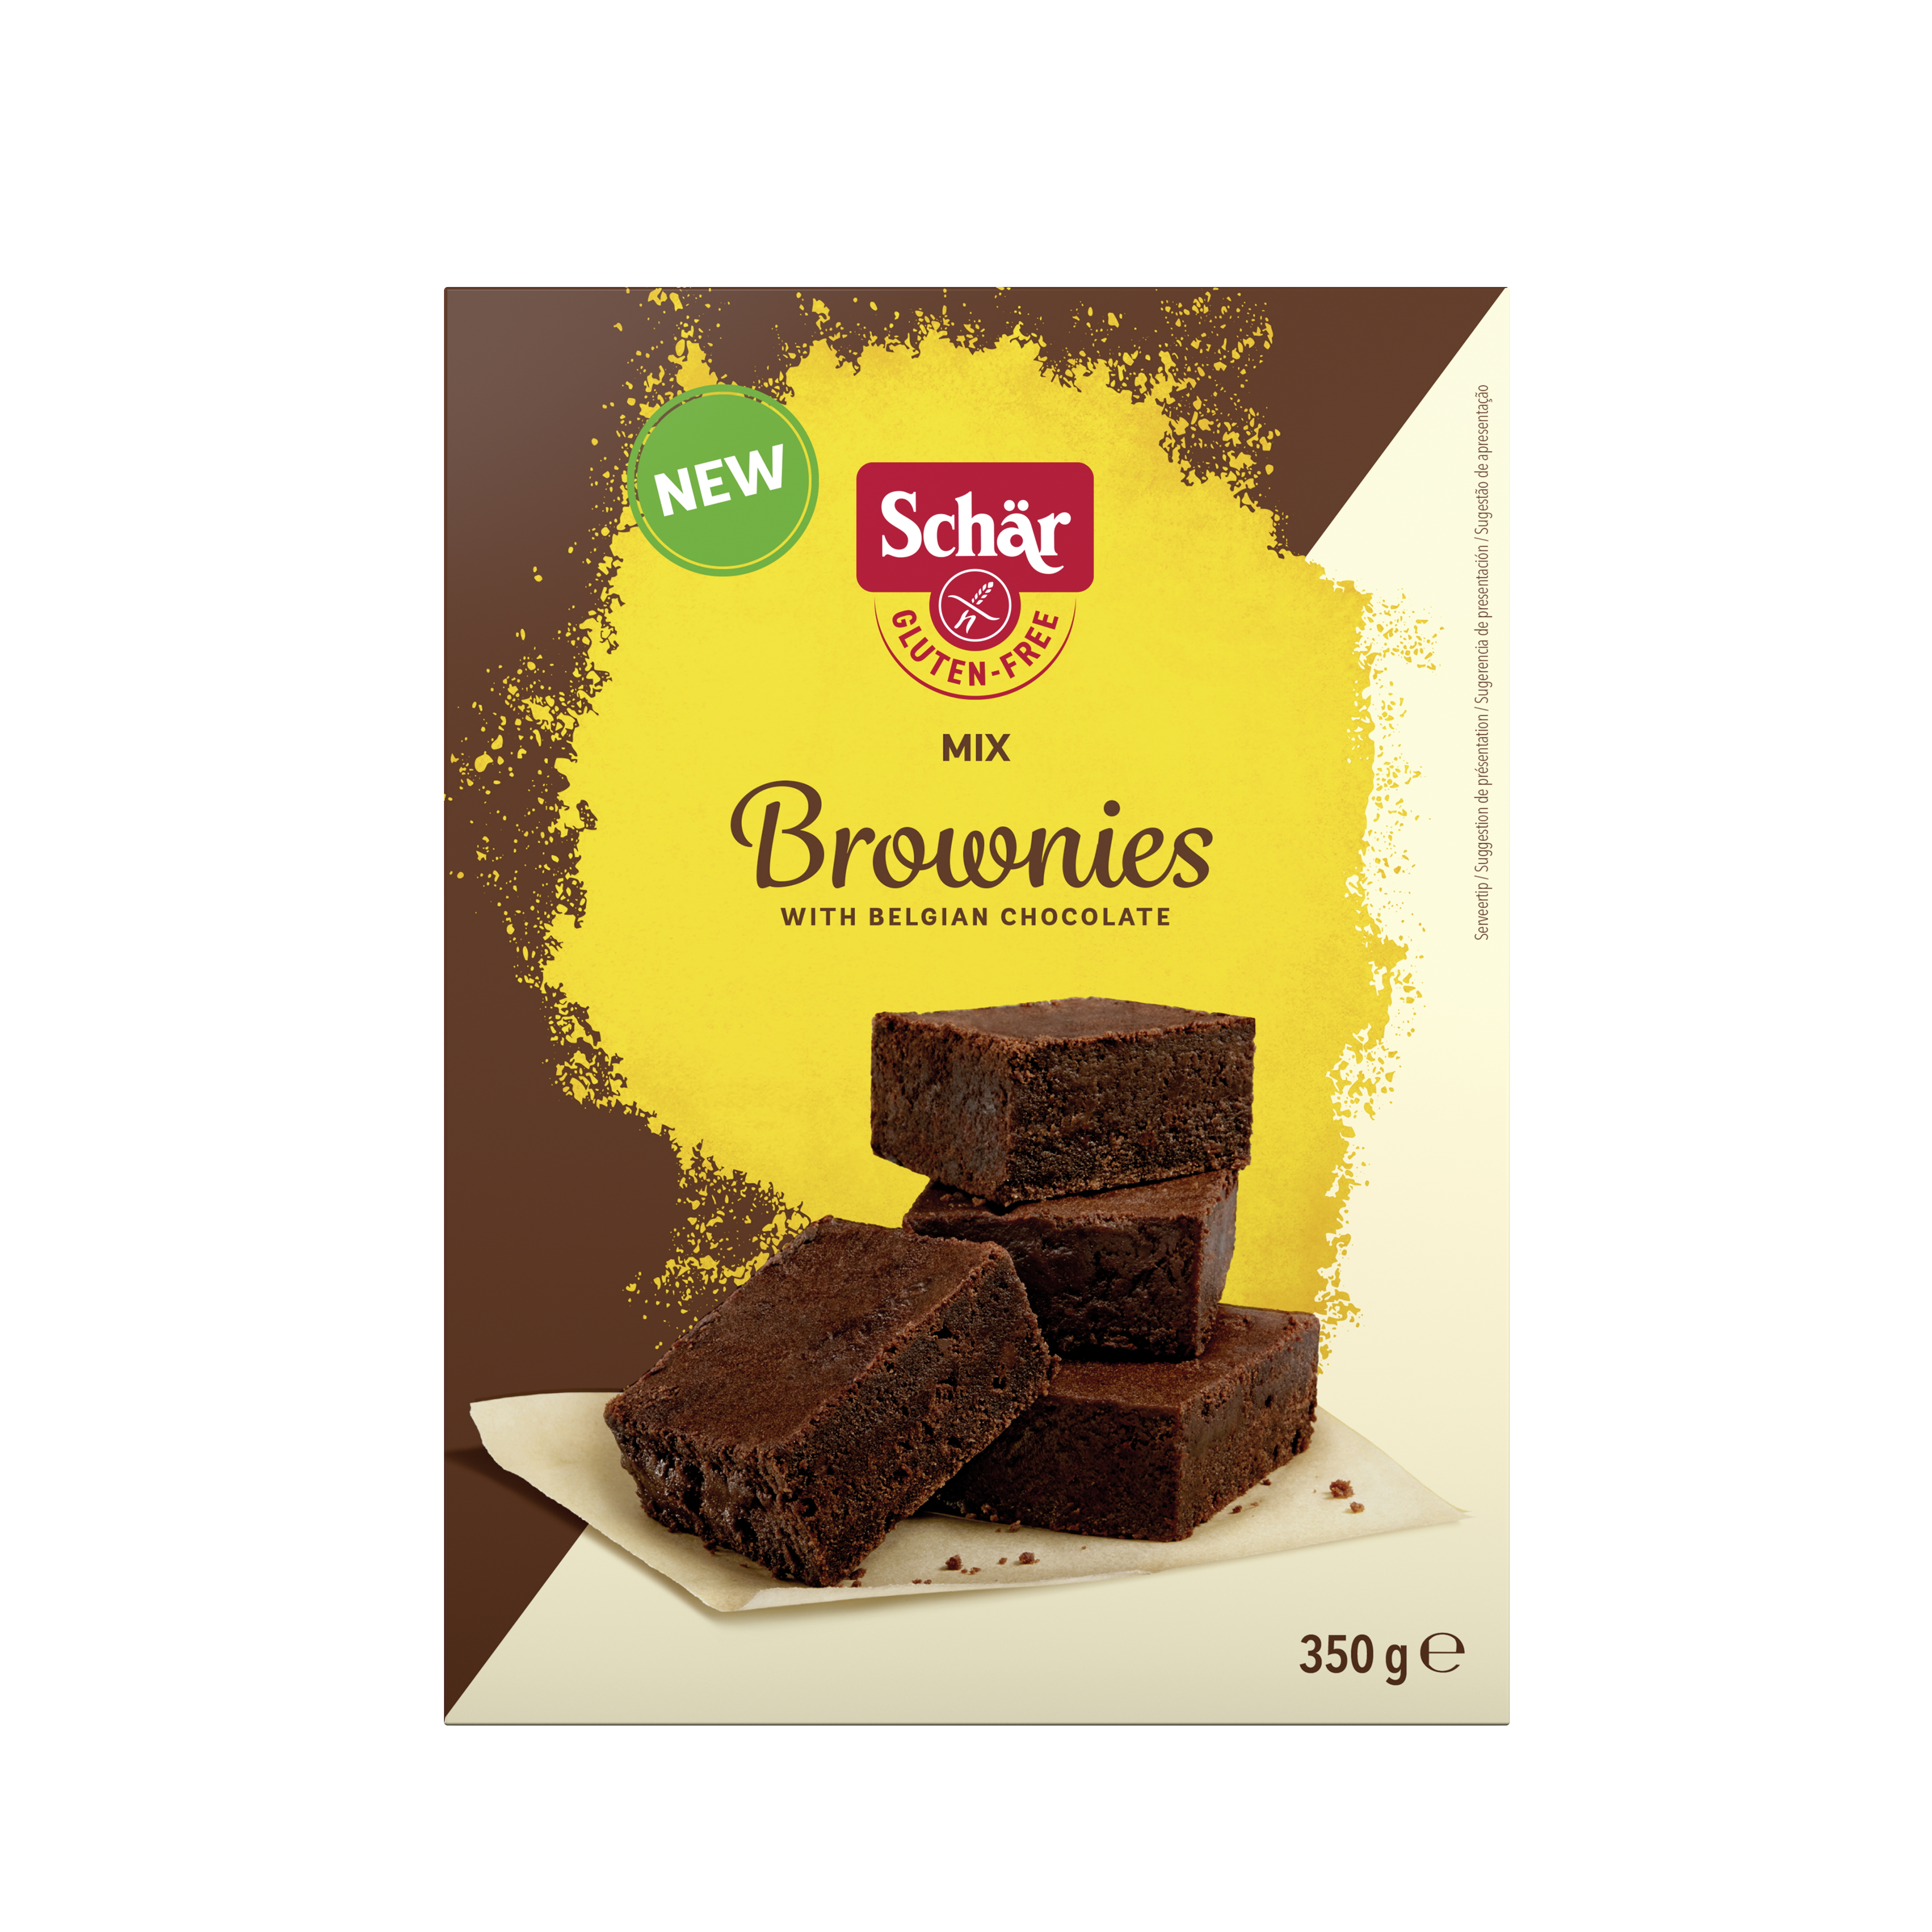 Mix Brownies, 350g